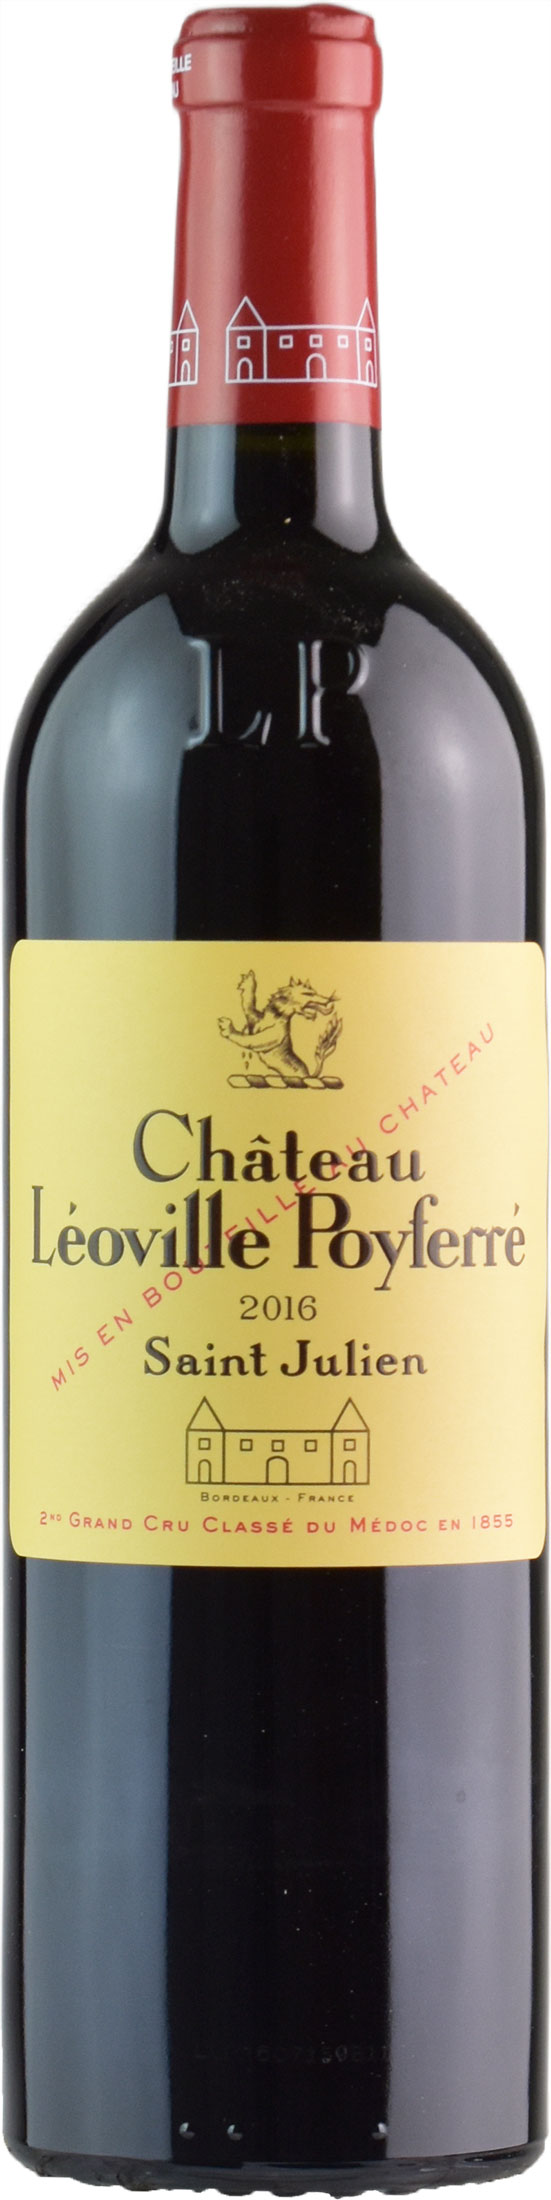 Chateau Leoville Poyferre Saint Julien 2nd Grand Cru Classé Du Medoc 2016